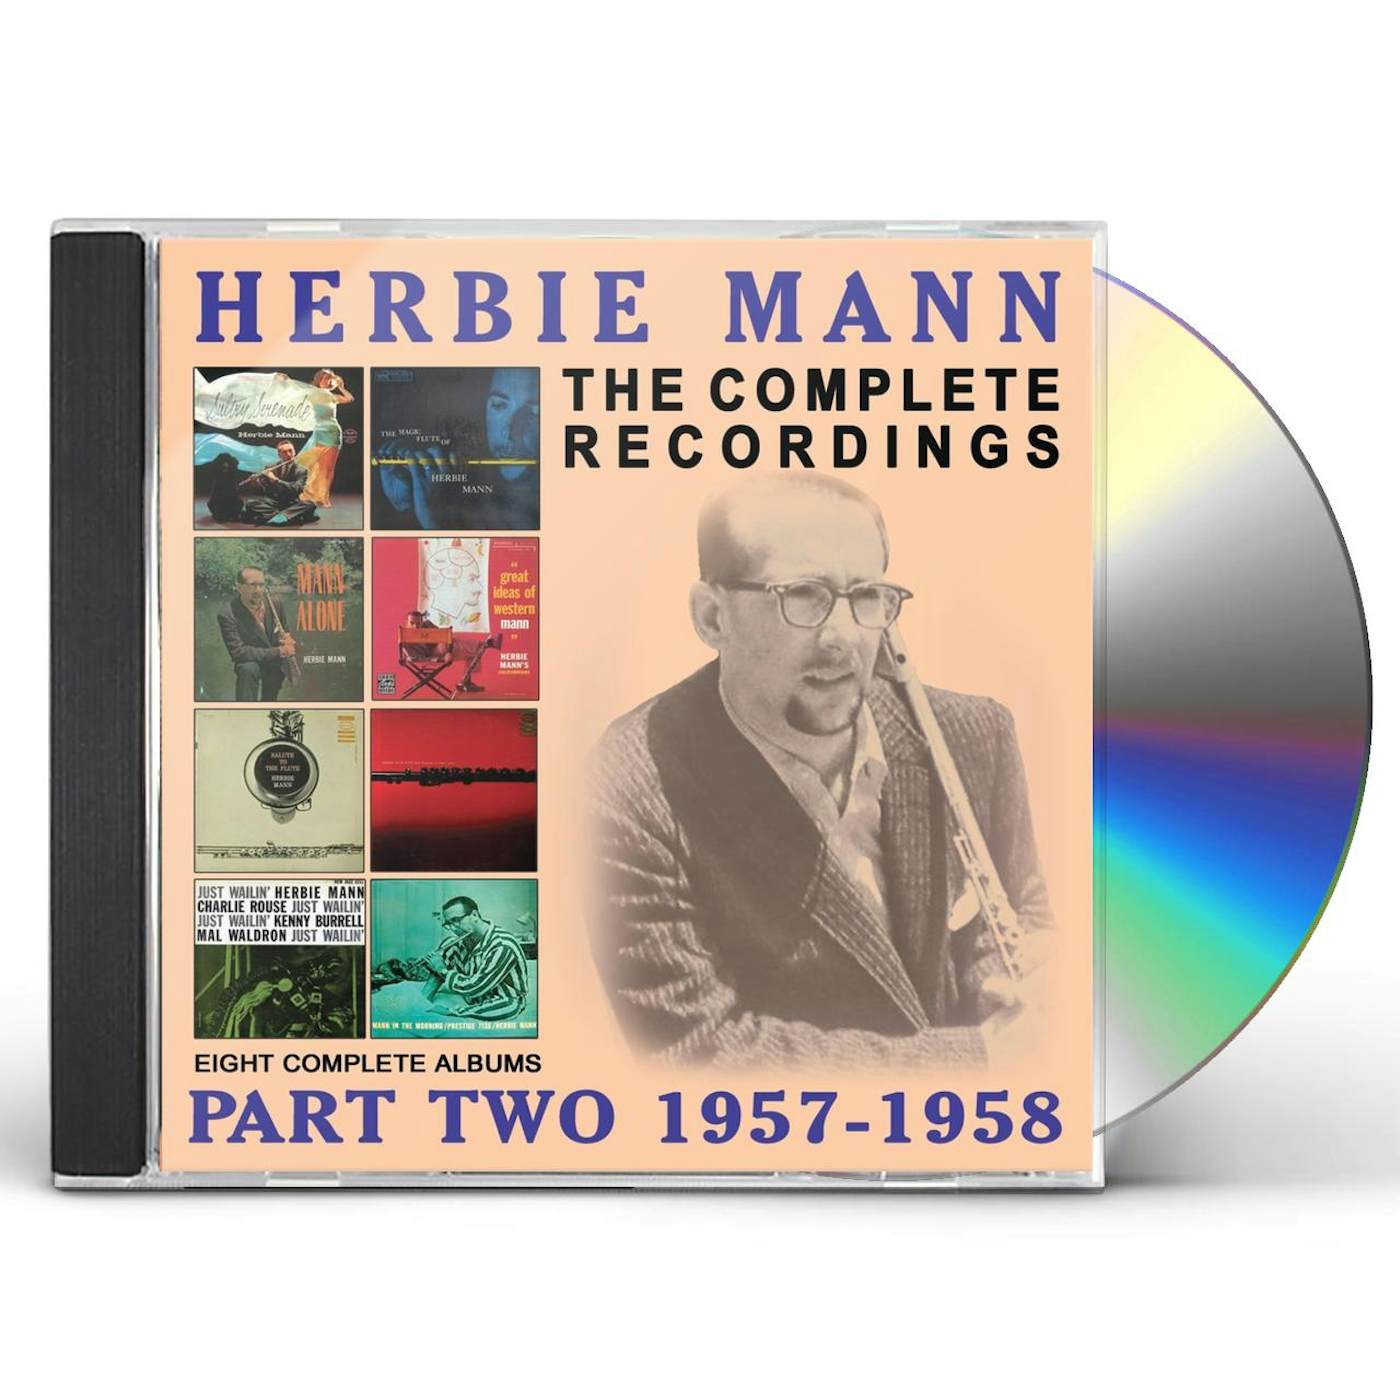 Herbie Mann COMPLETE RECORDINGS: 1957-1958 CD